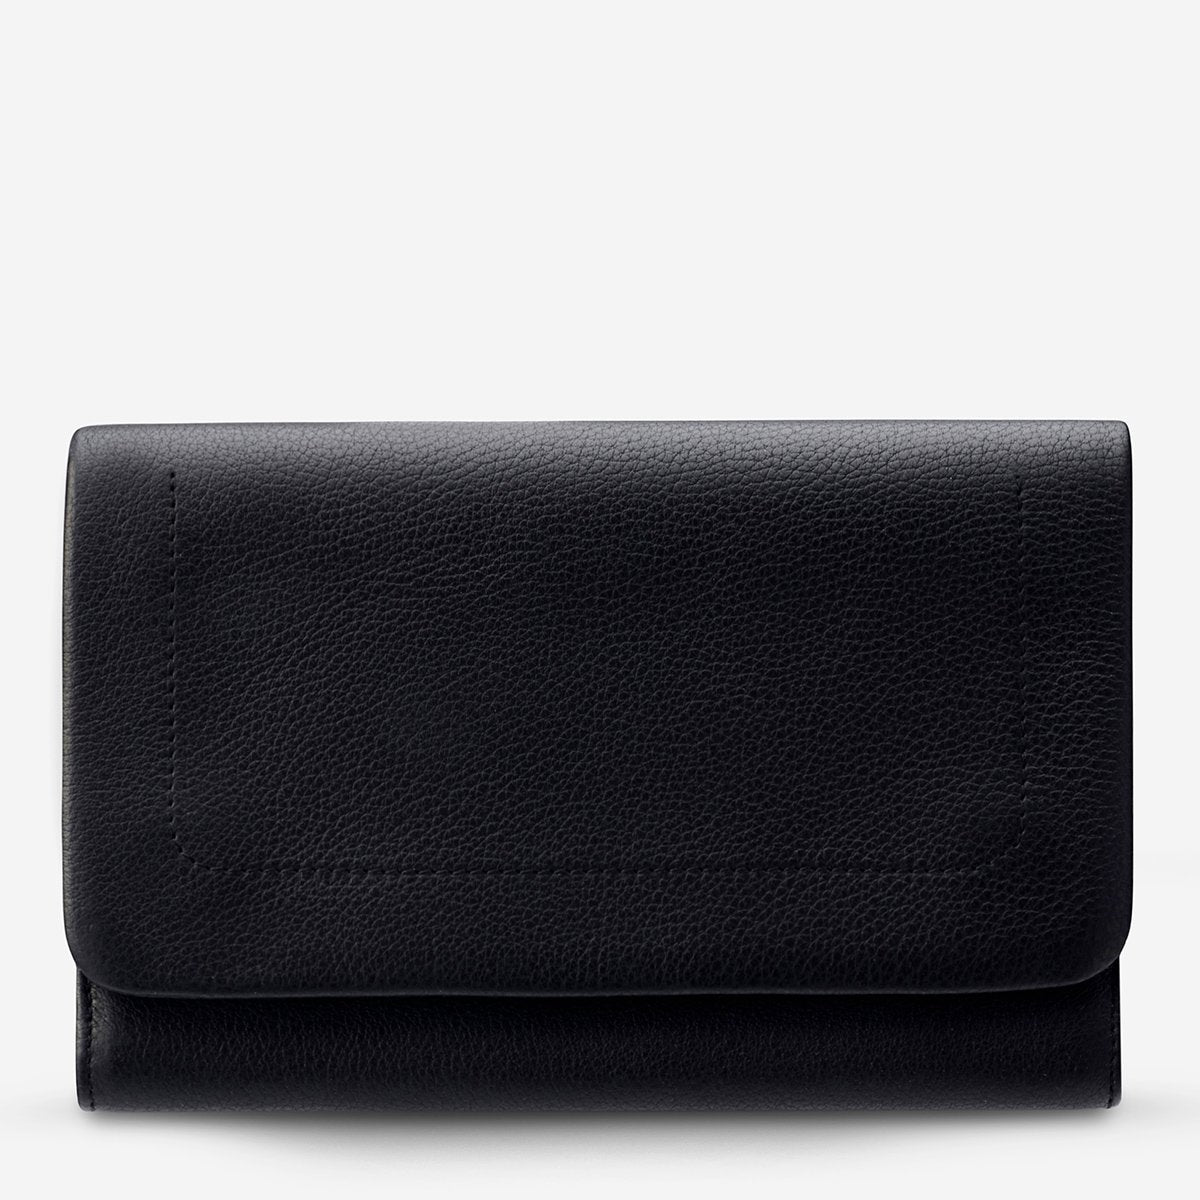 REMNANT Black wallet